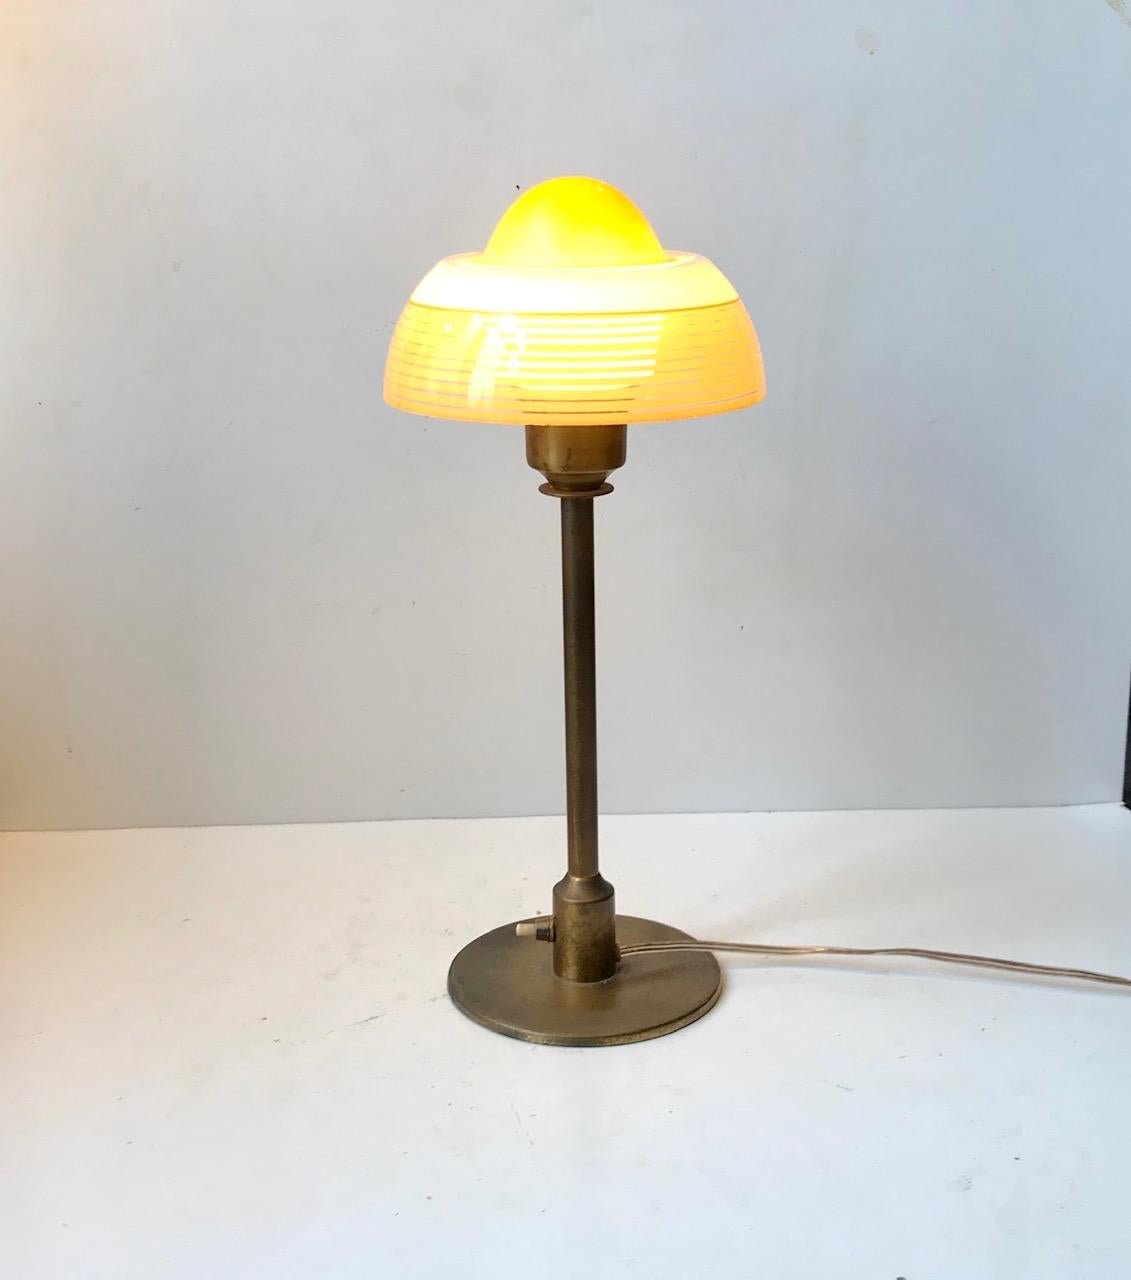 Lampe de table Art déco danoise fabriquée par Fog et Mørup dans les années 1930. Il est fabriqué en laiton patiné et comporte un abat-jour en verre partiellement peint à une seule couche qui ressemble à un œuf frit - d'où son nom. Ce design est